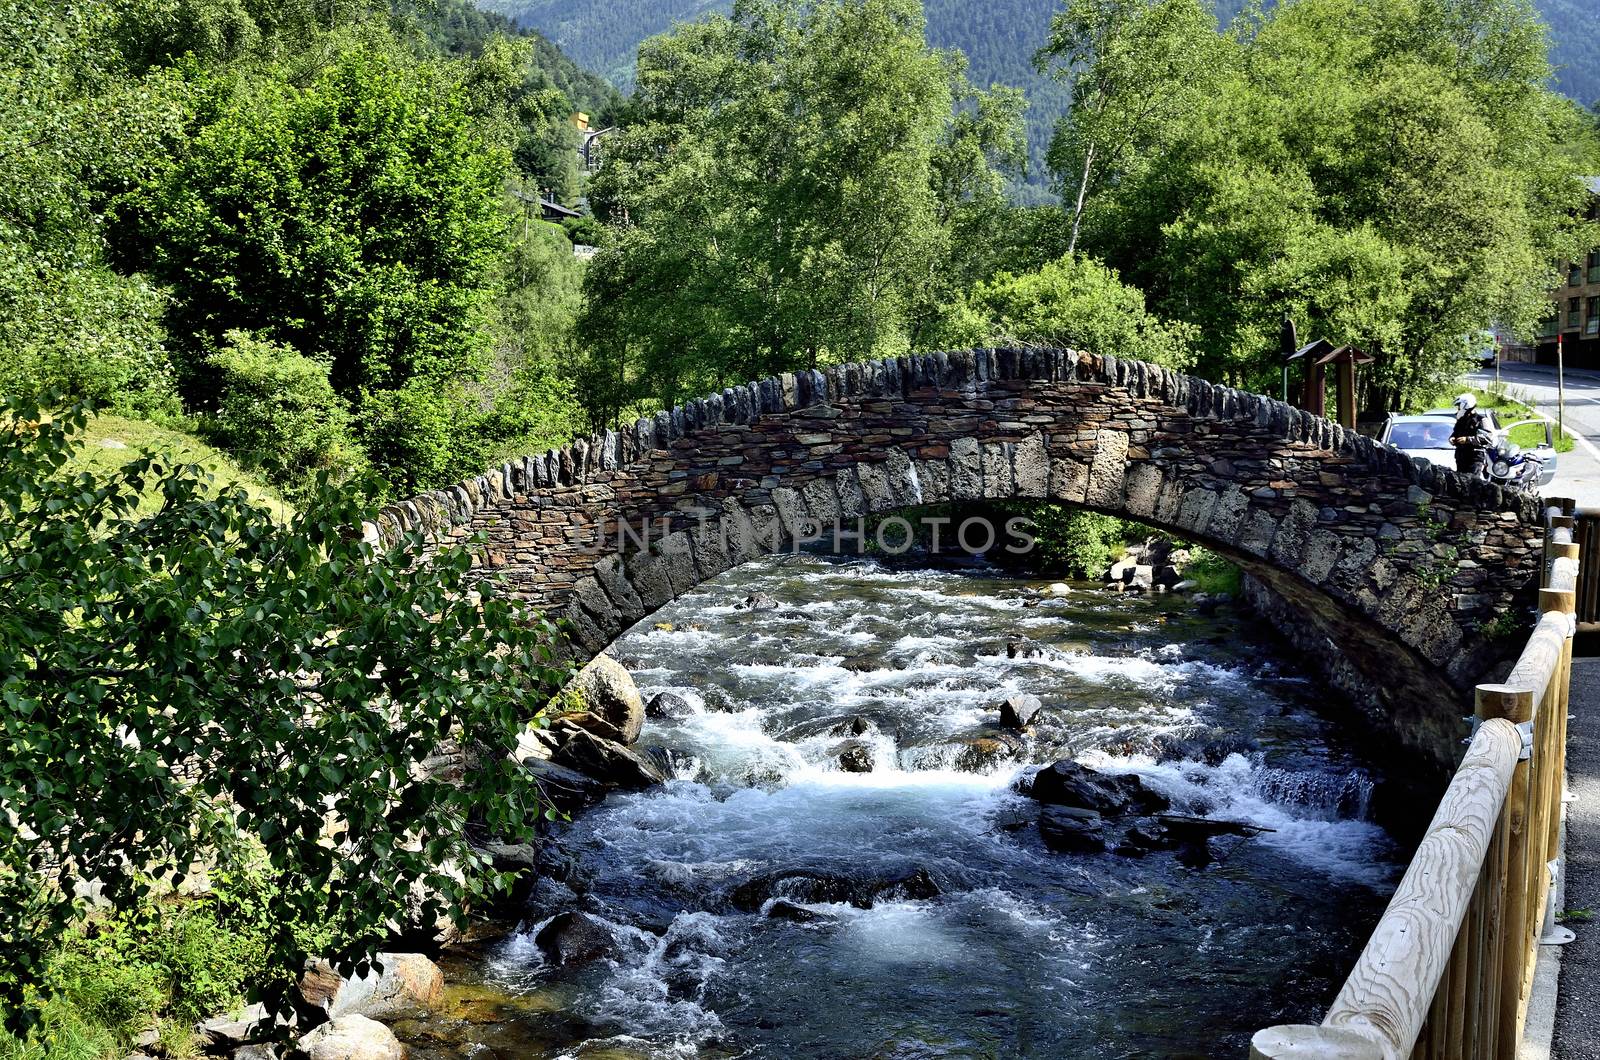 Roman Bridge located in the Ordino region of Andorra